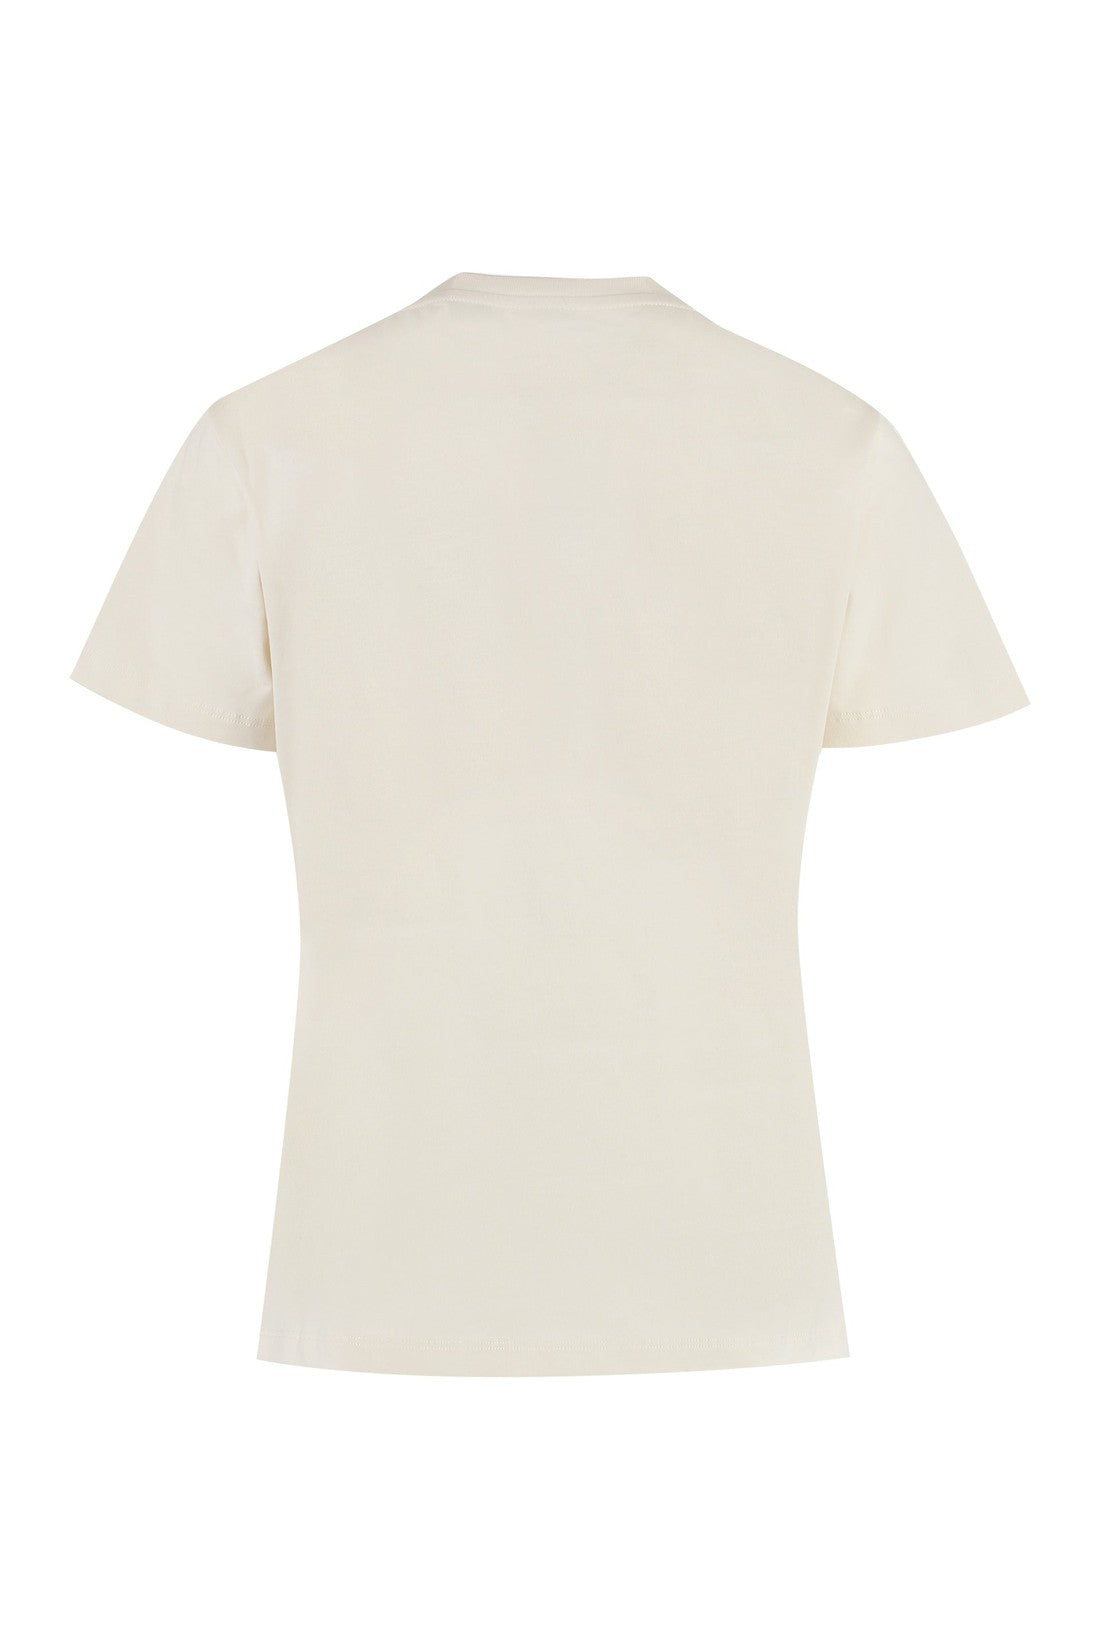 Pinko-OUTLET-SALE-Cotton crew-neck T-shirt-ARCHIVIST